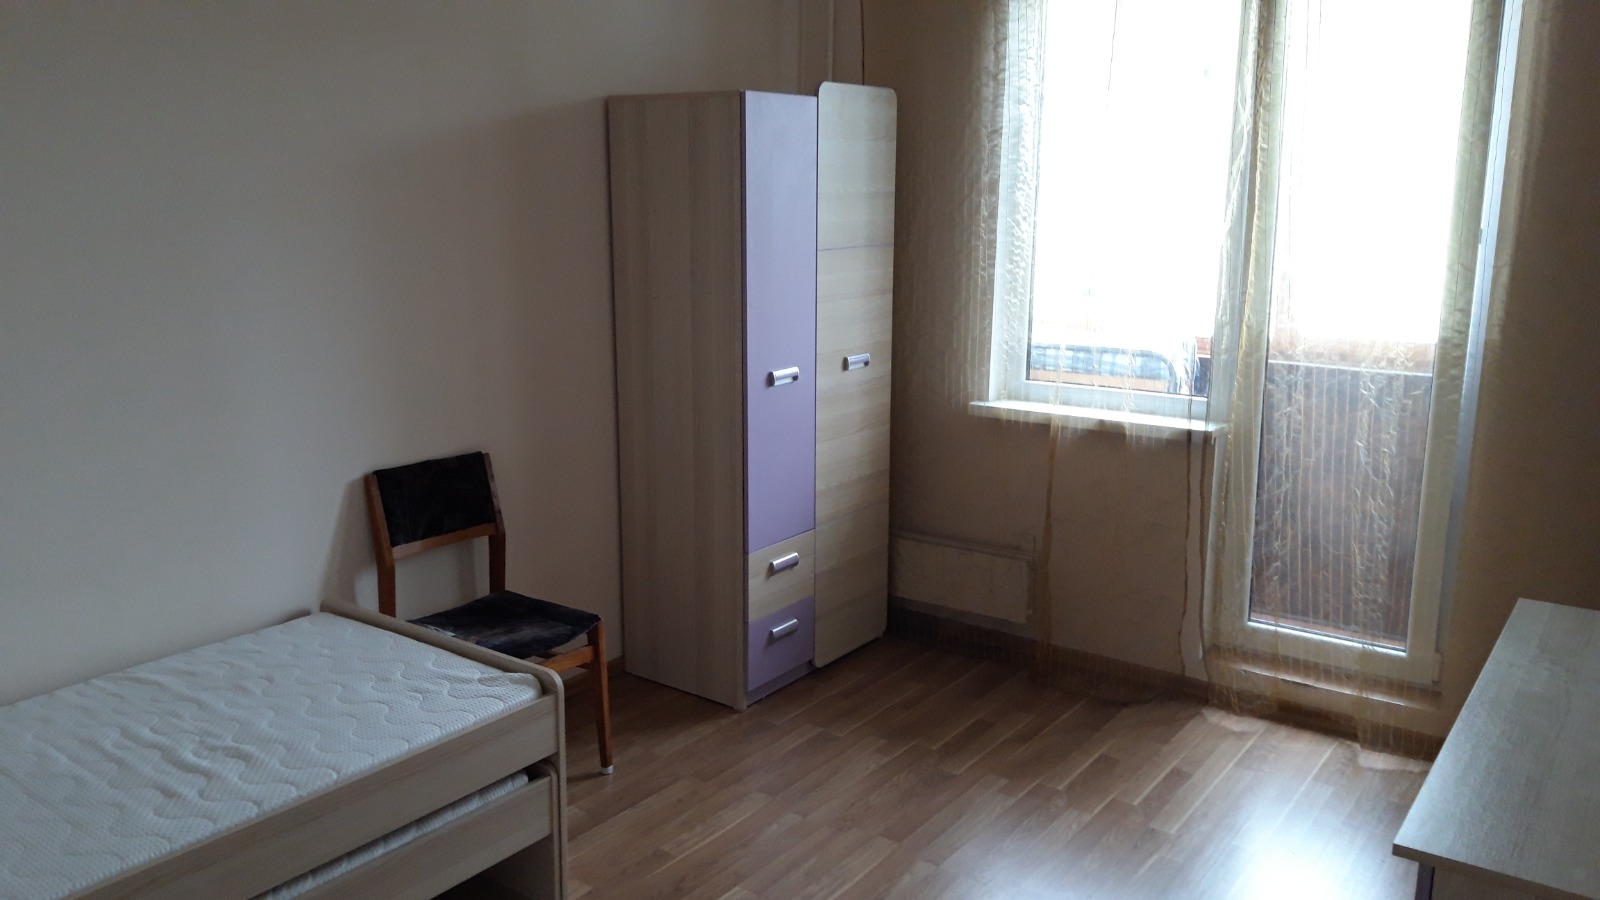 Apartment for rent, Zentenes street 20 - Image 1